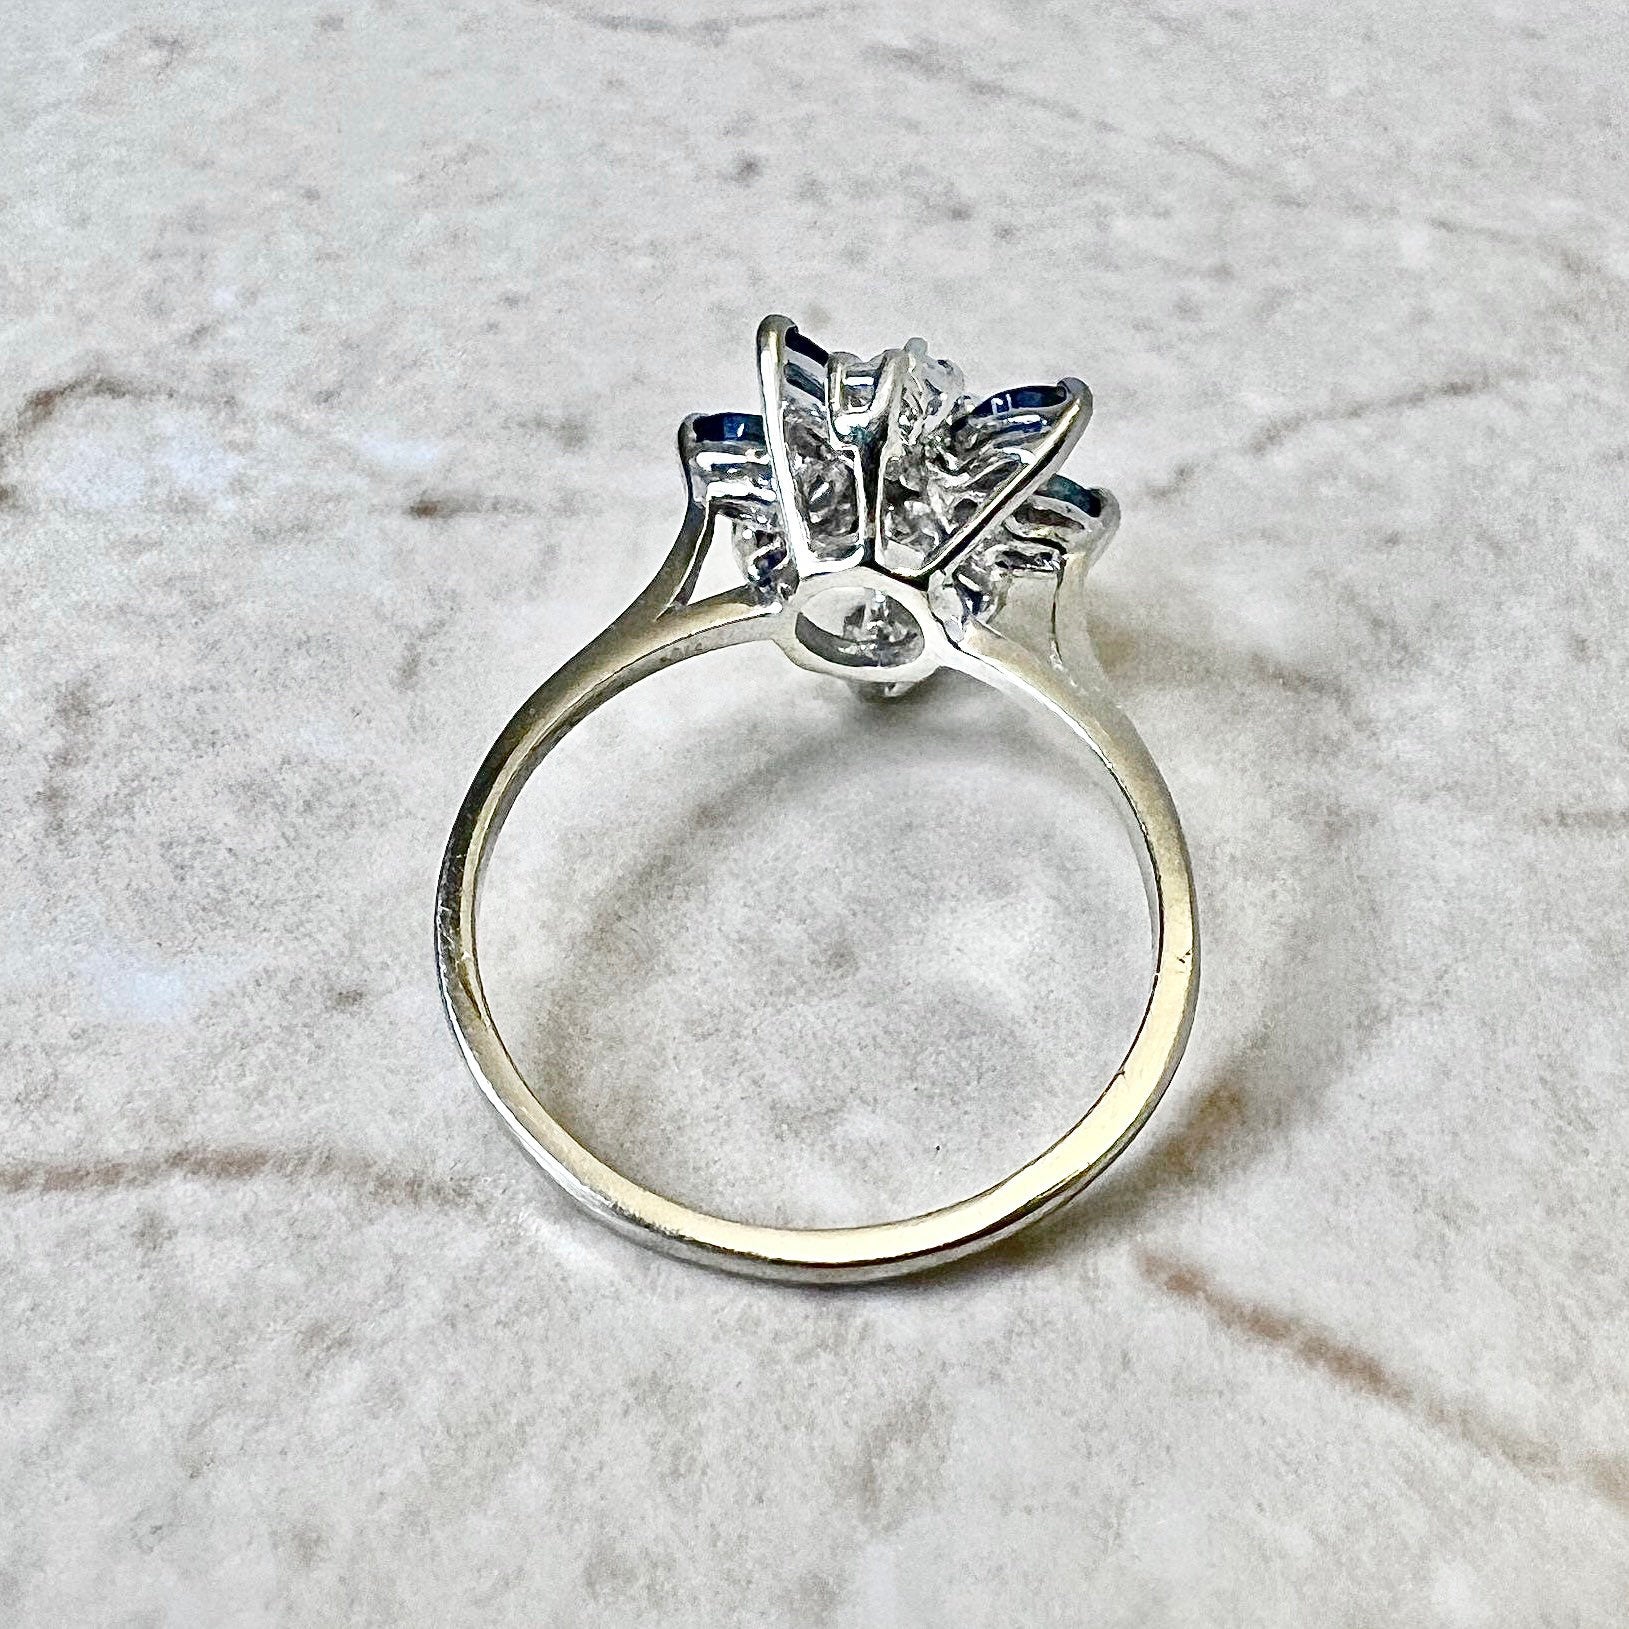 14K Sapphire & Diamond Cocktail Ring - White Gold Flower Ring - Promise Ring - Anniversary Ring - September Birthstone - Best Gift For Her